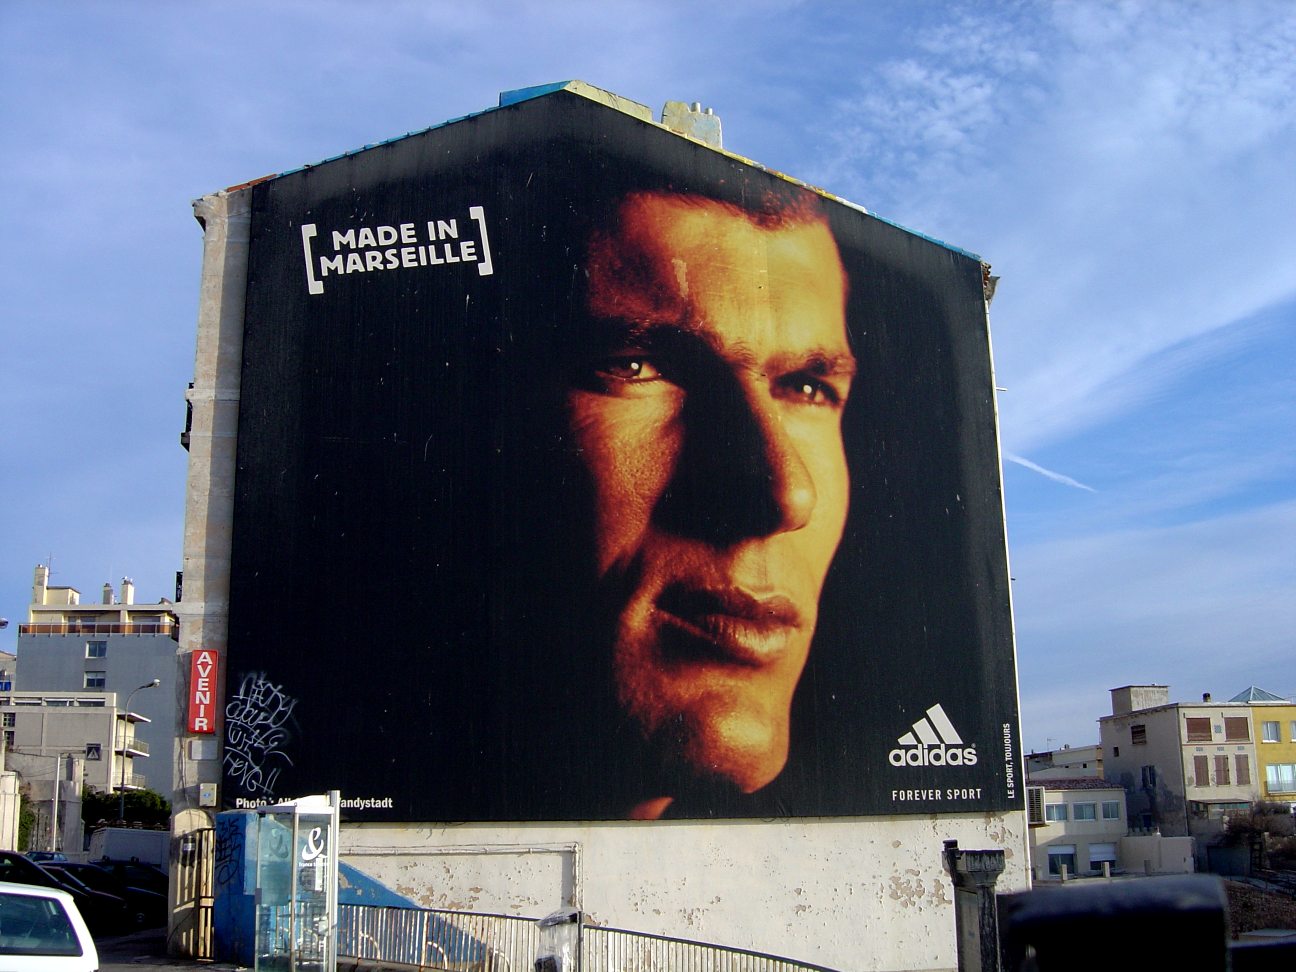 صور لاشهر لاعبي كرة القدم  Zinedine_zidane